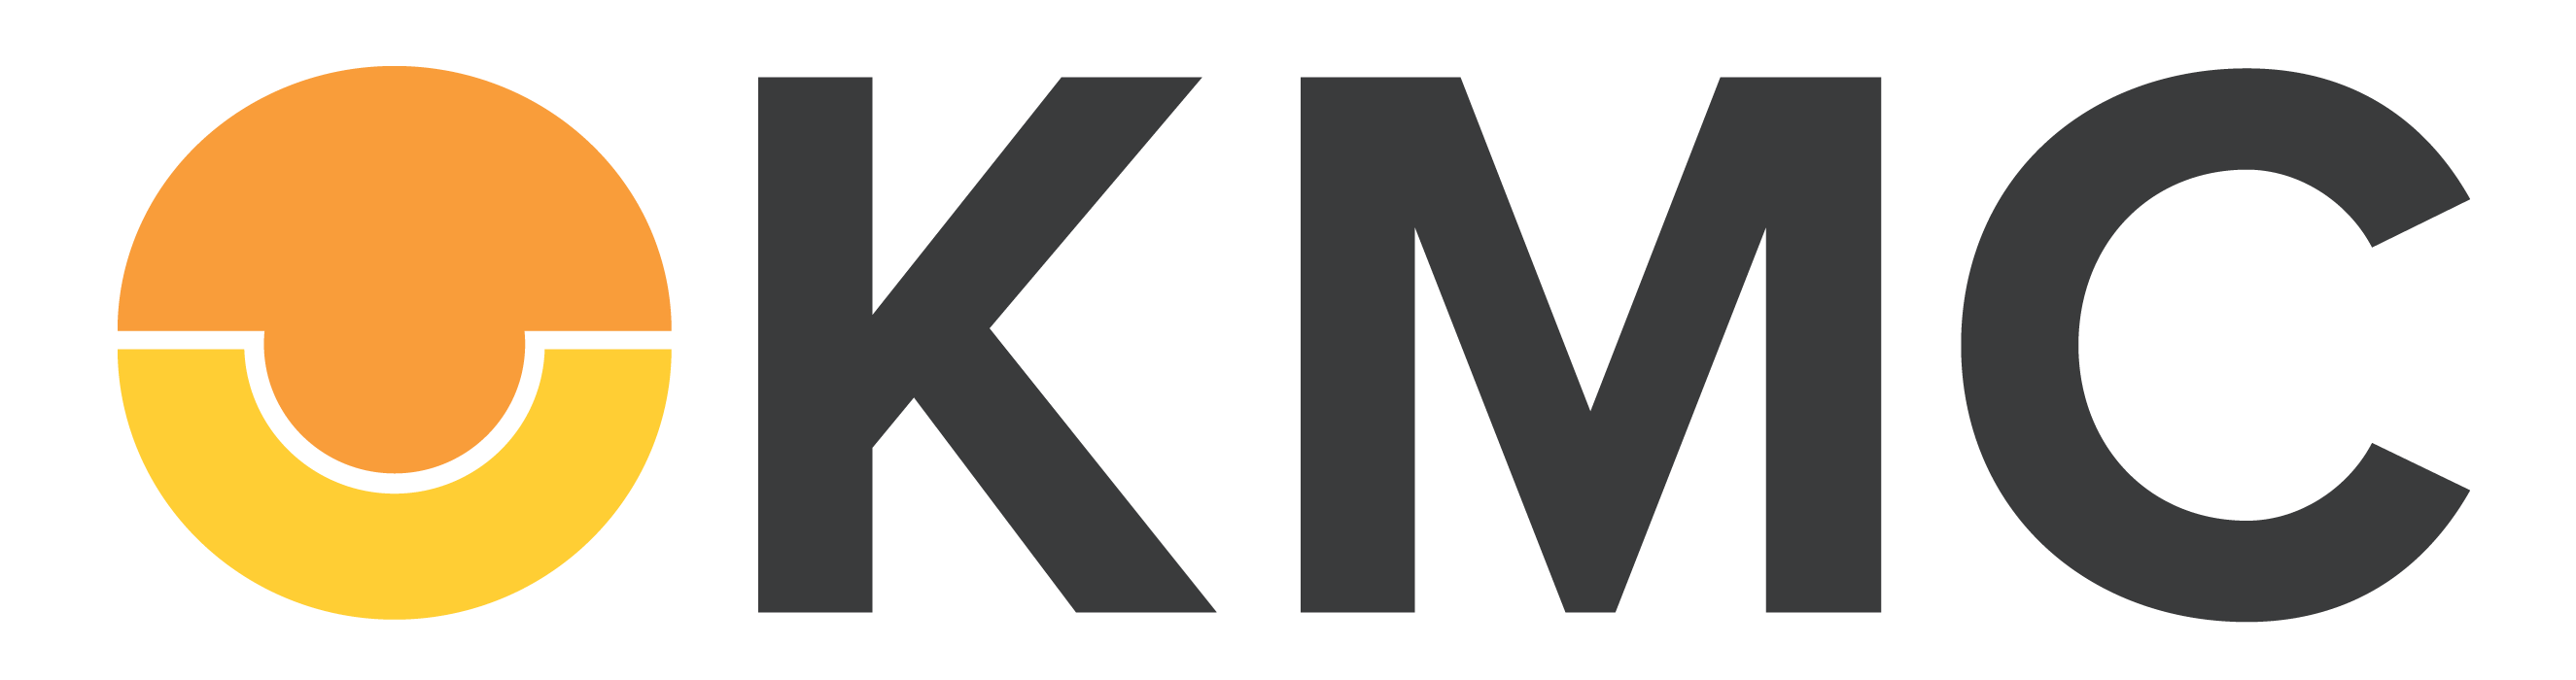 KMC Logo - kmc-logo-2018 | Disini Legal Tech Forum